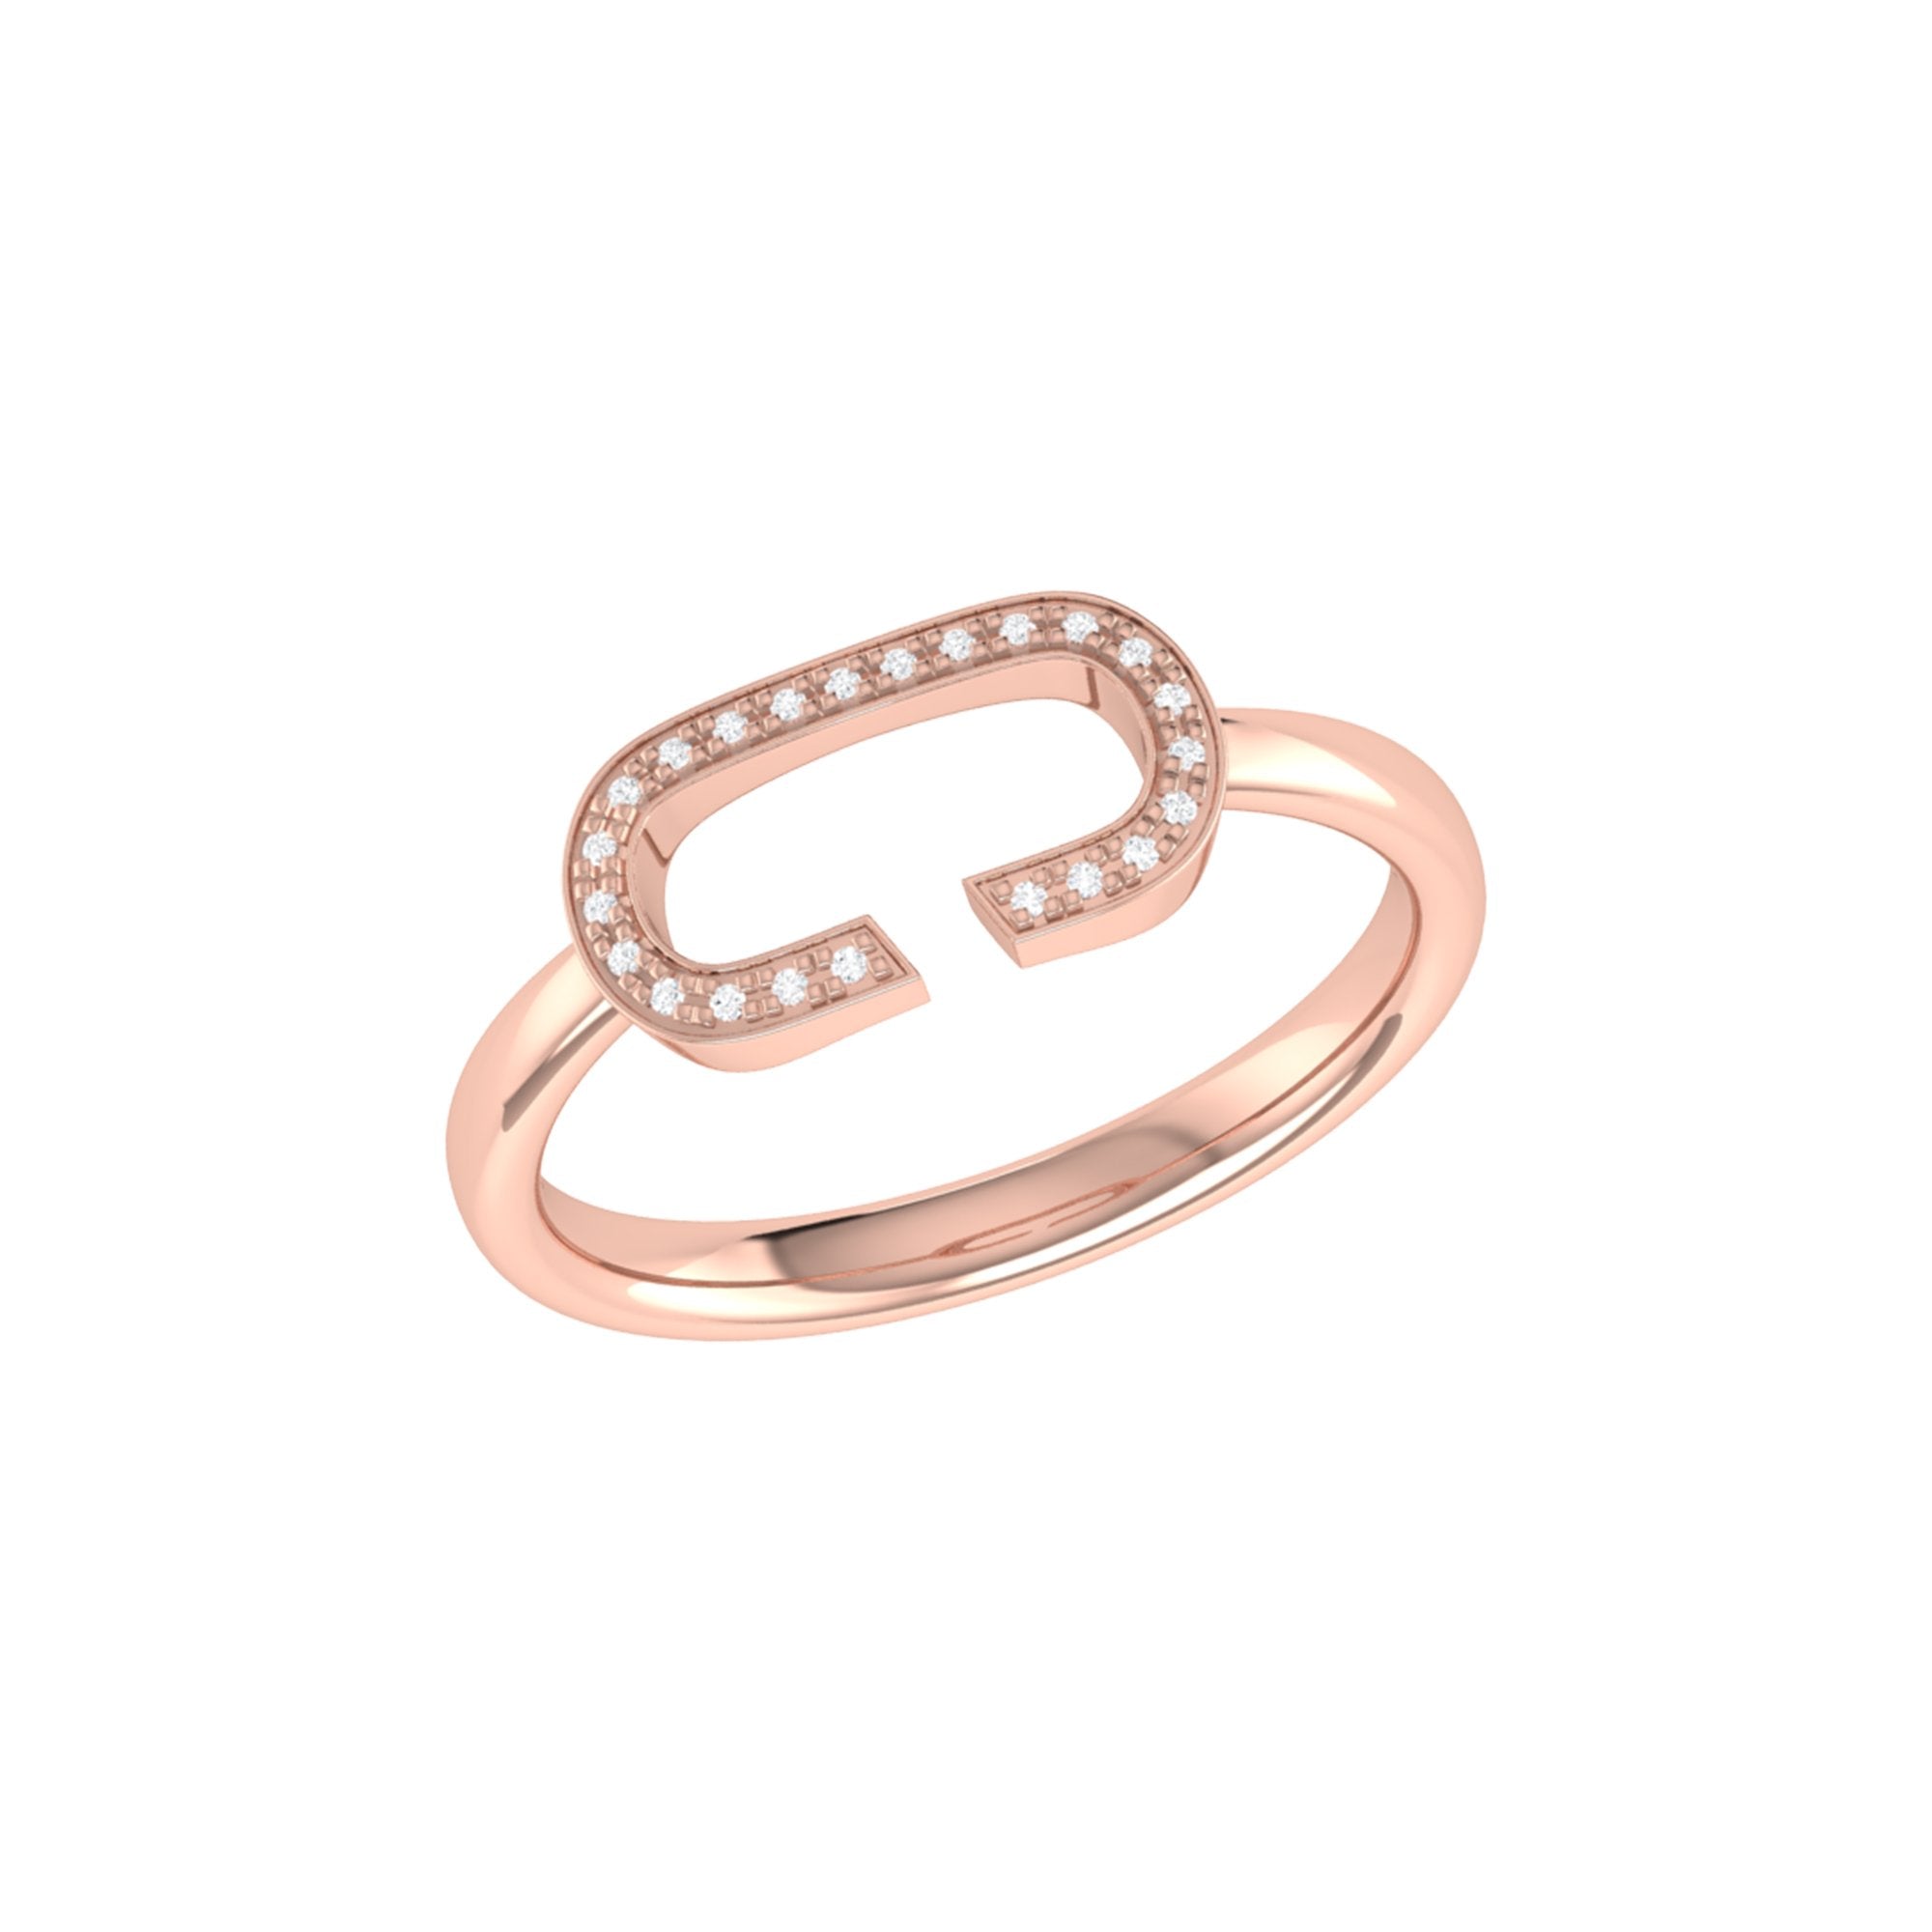 Celia C Diamond Ring in 14K Rose Gold